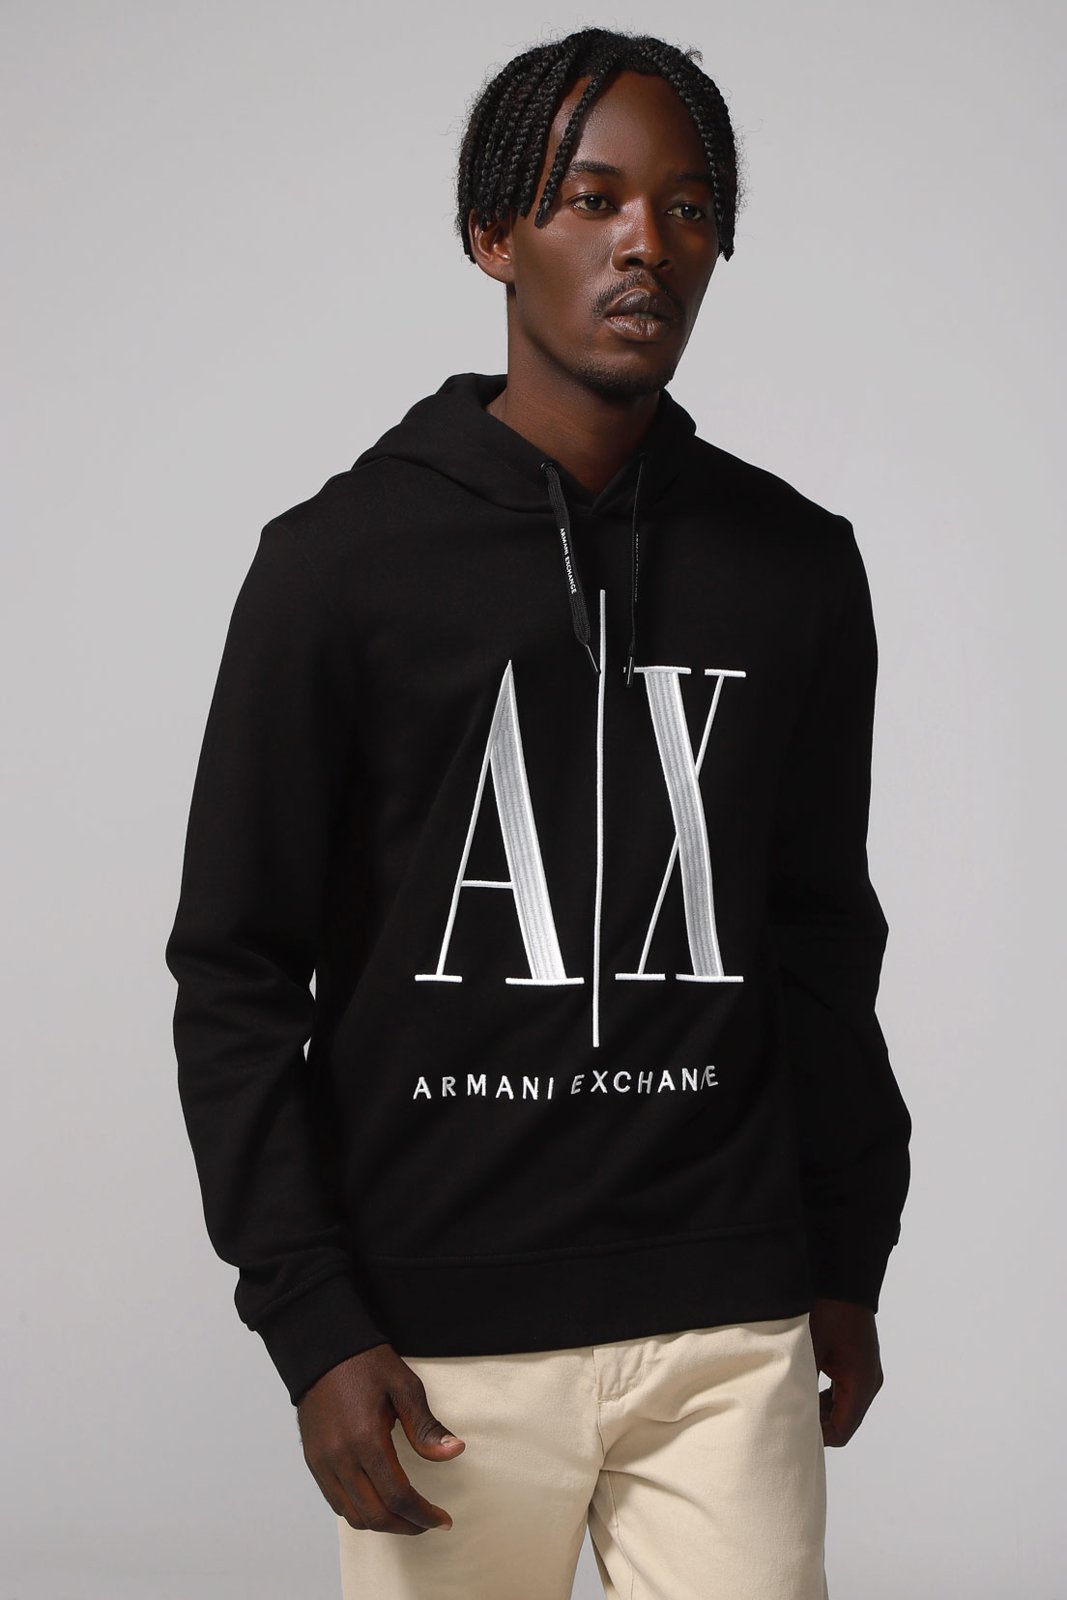 AX, Armani Exchange